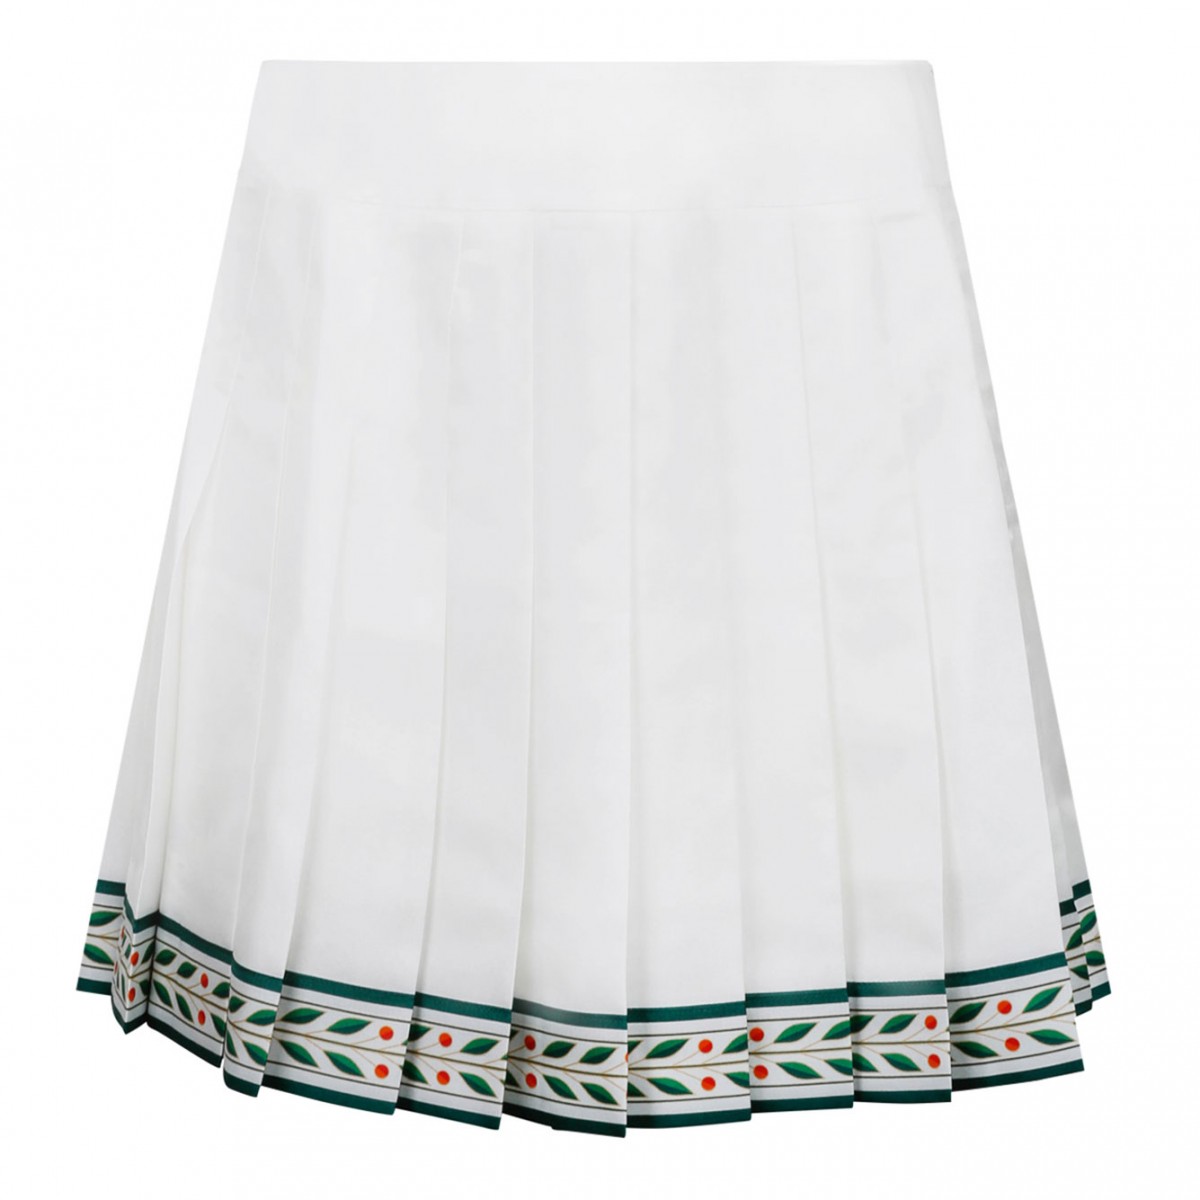 White Laurel Tennis Skirt